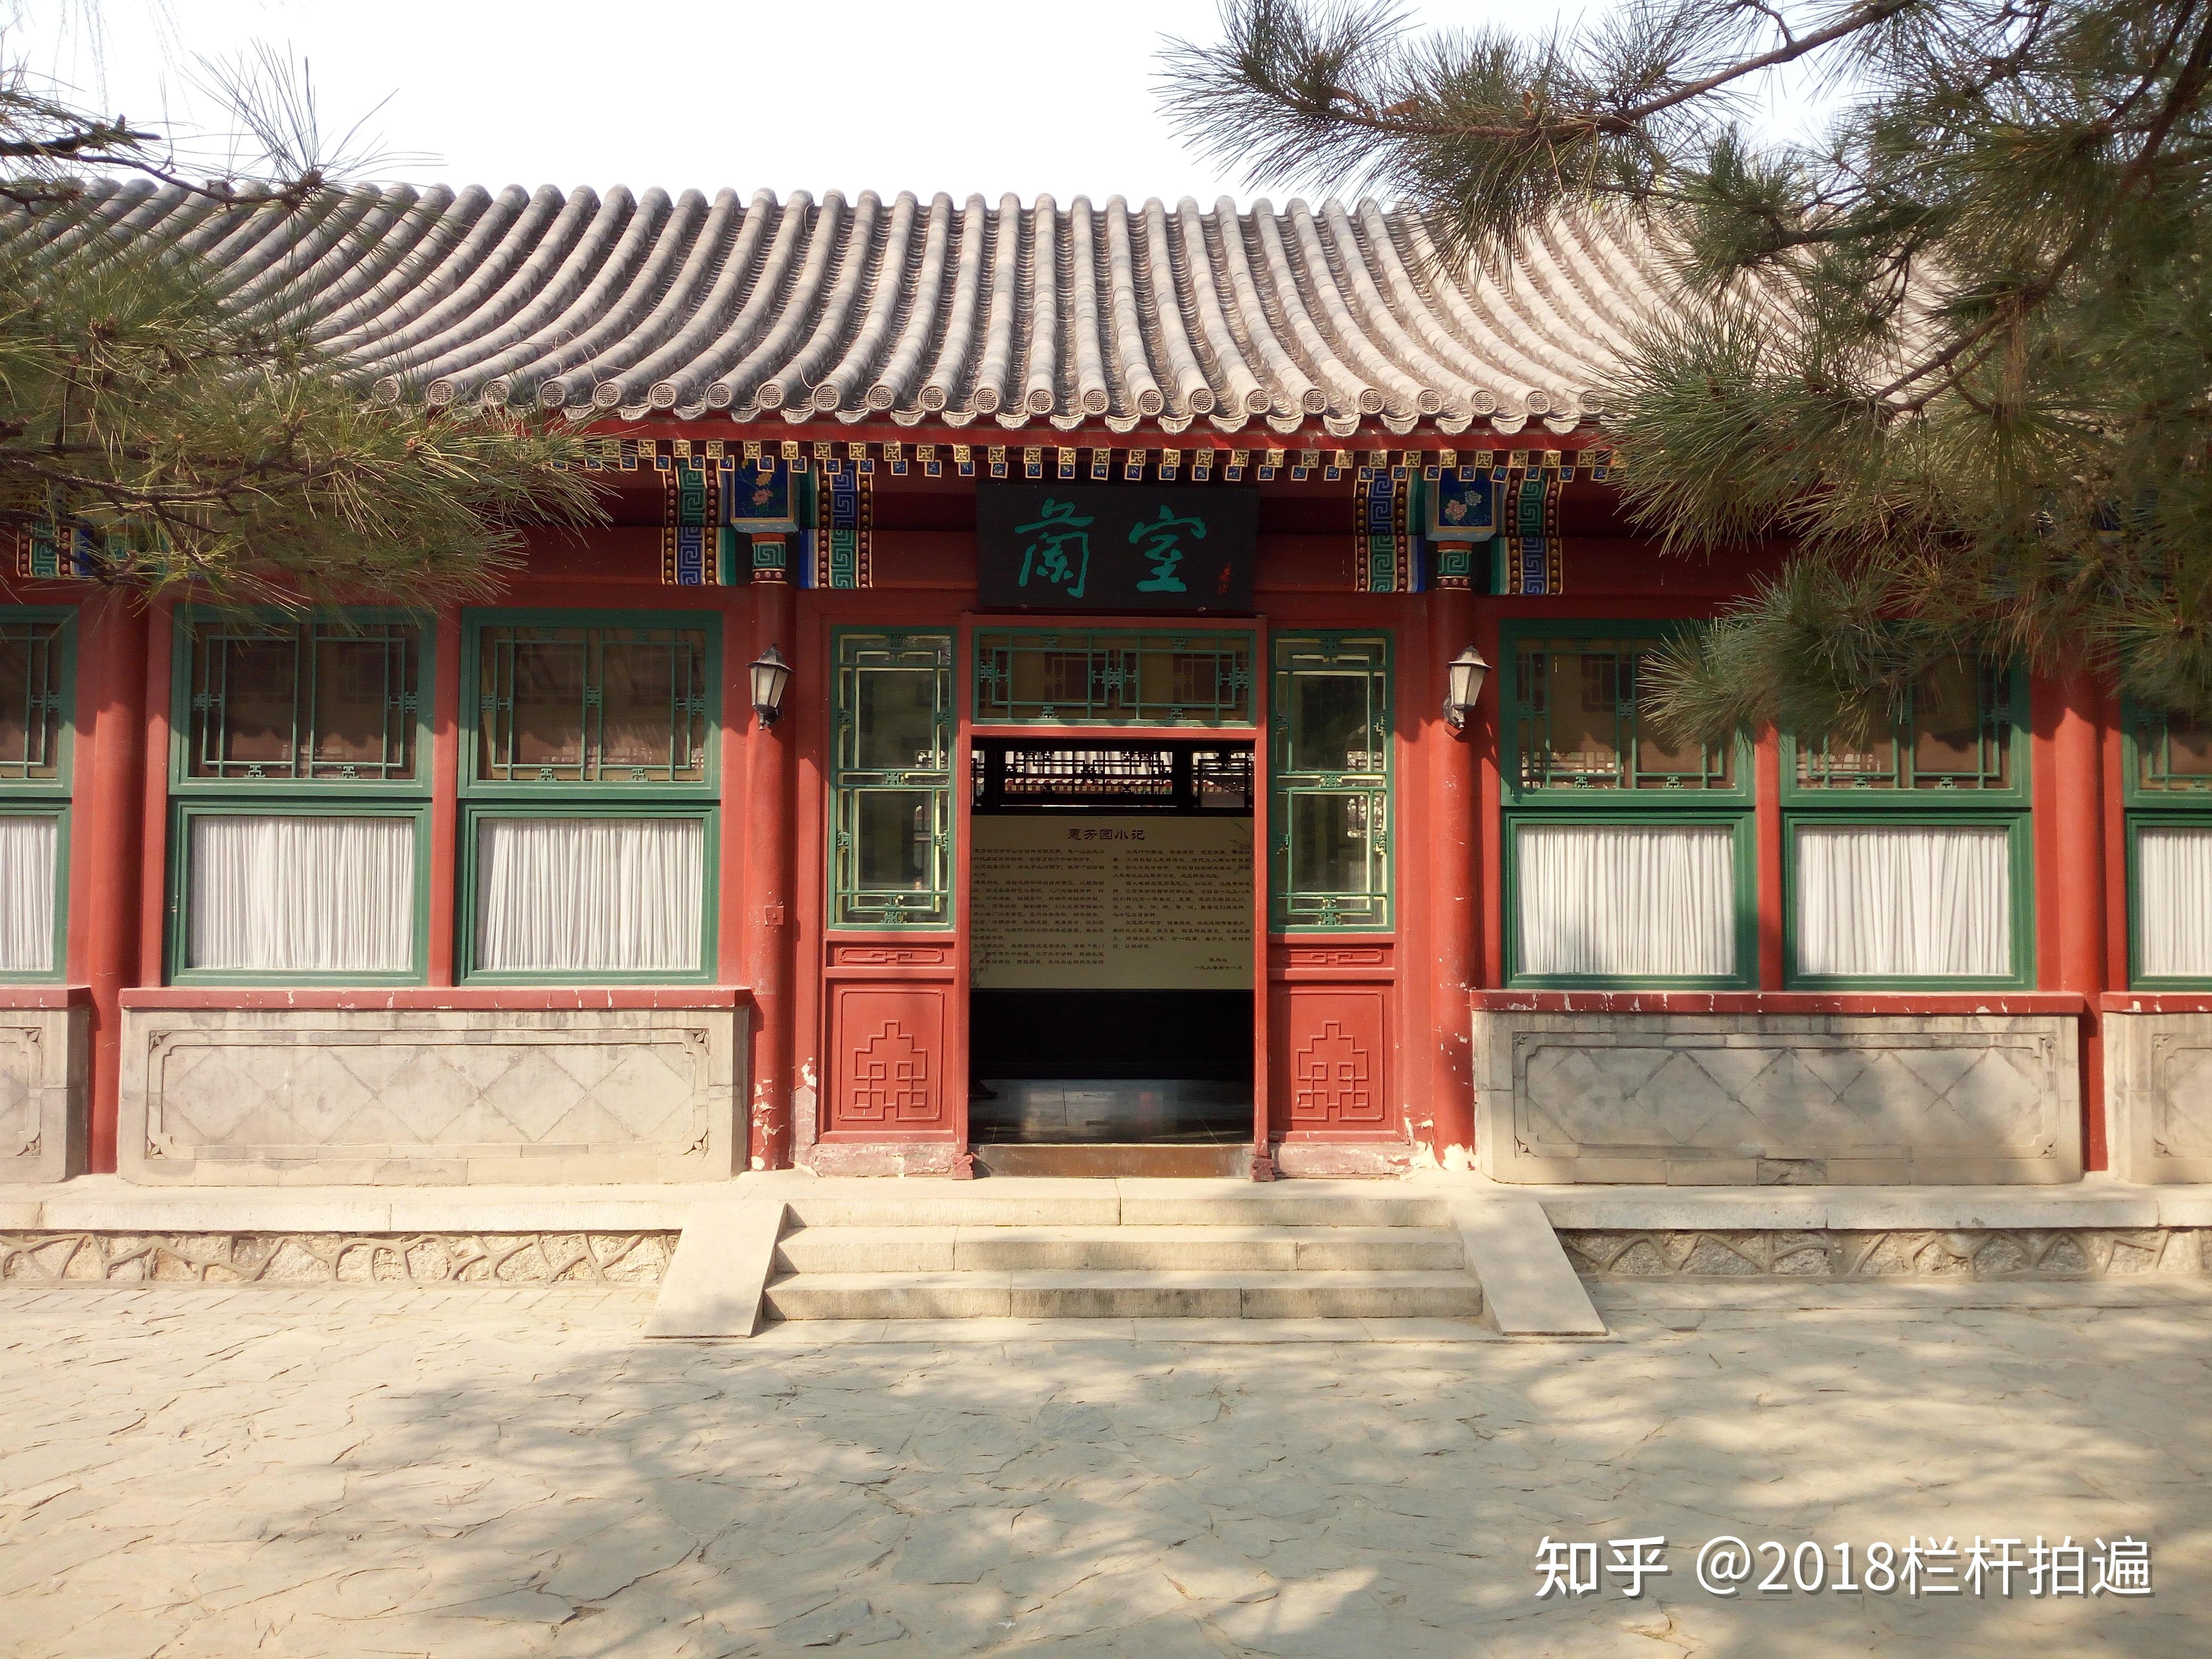 北京人私藏的避暑圣地——宣武艺园